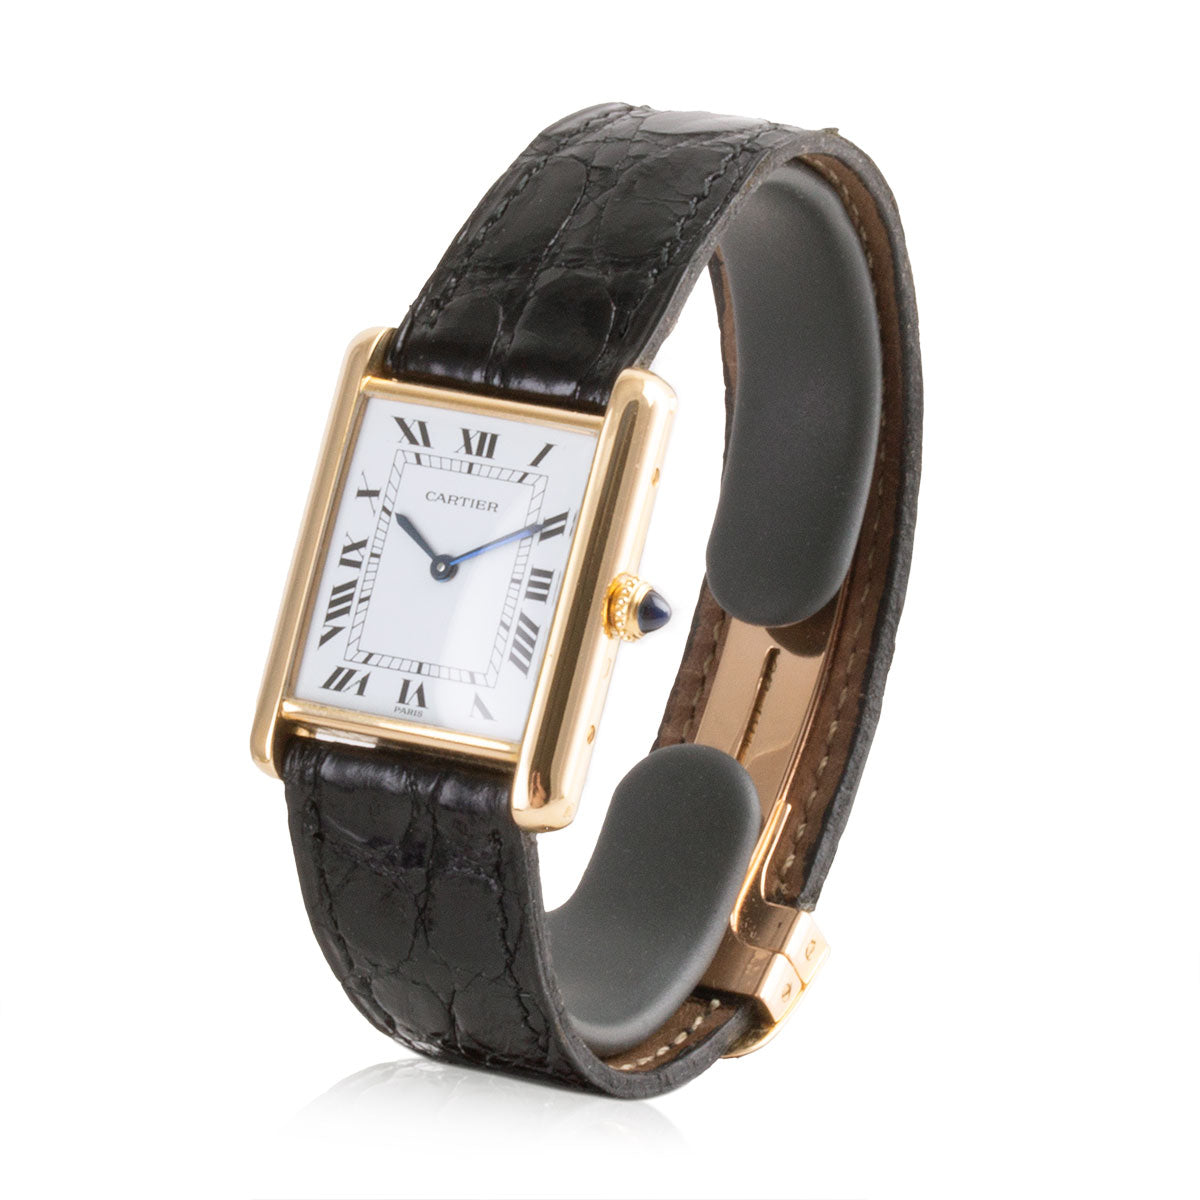 Second-hand watch - Cartier - Tank - 7300€